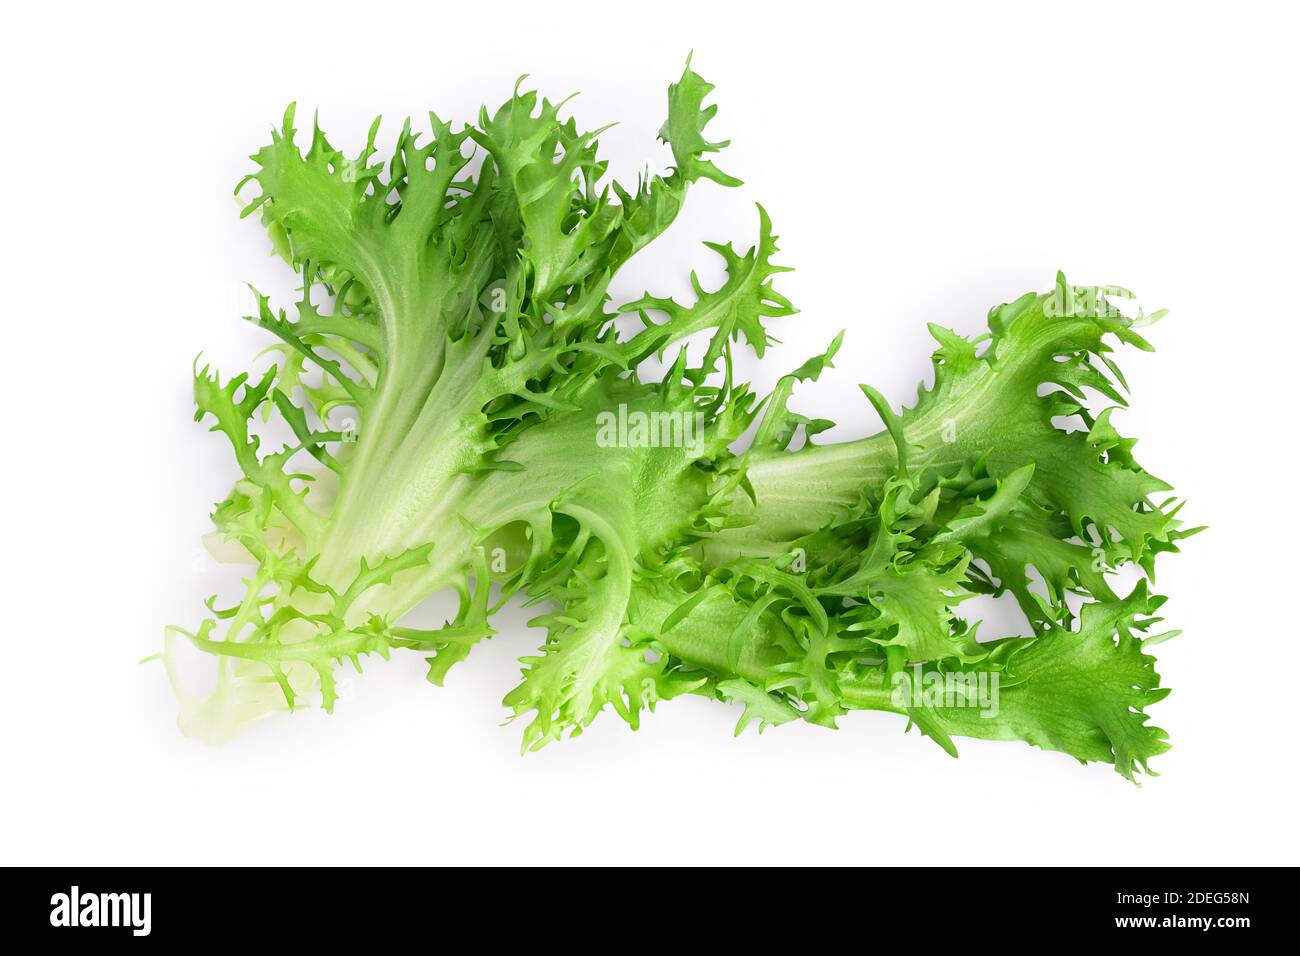 Frische grüne Blätter Endive Frisee Chicorée Salat isoliert auf weißem Hintergrund mit Clipping Pfad und volle Tiefe des Feldes. Draufsicht. Flach liegend Stockfoto